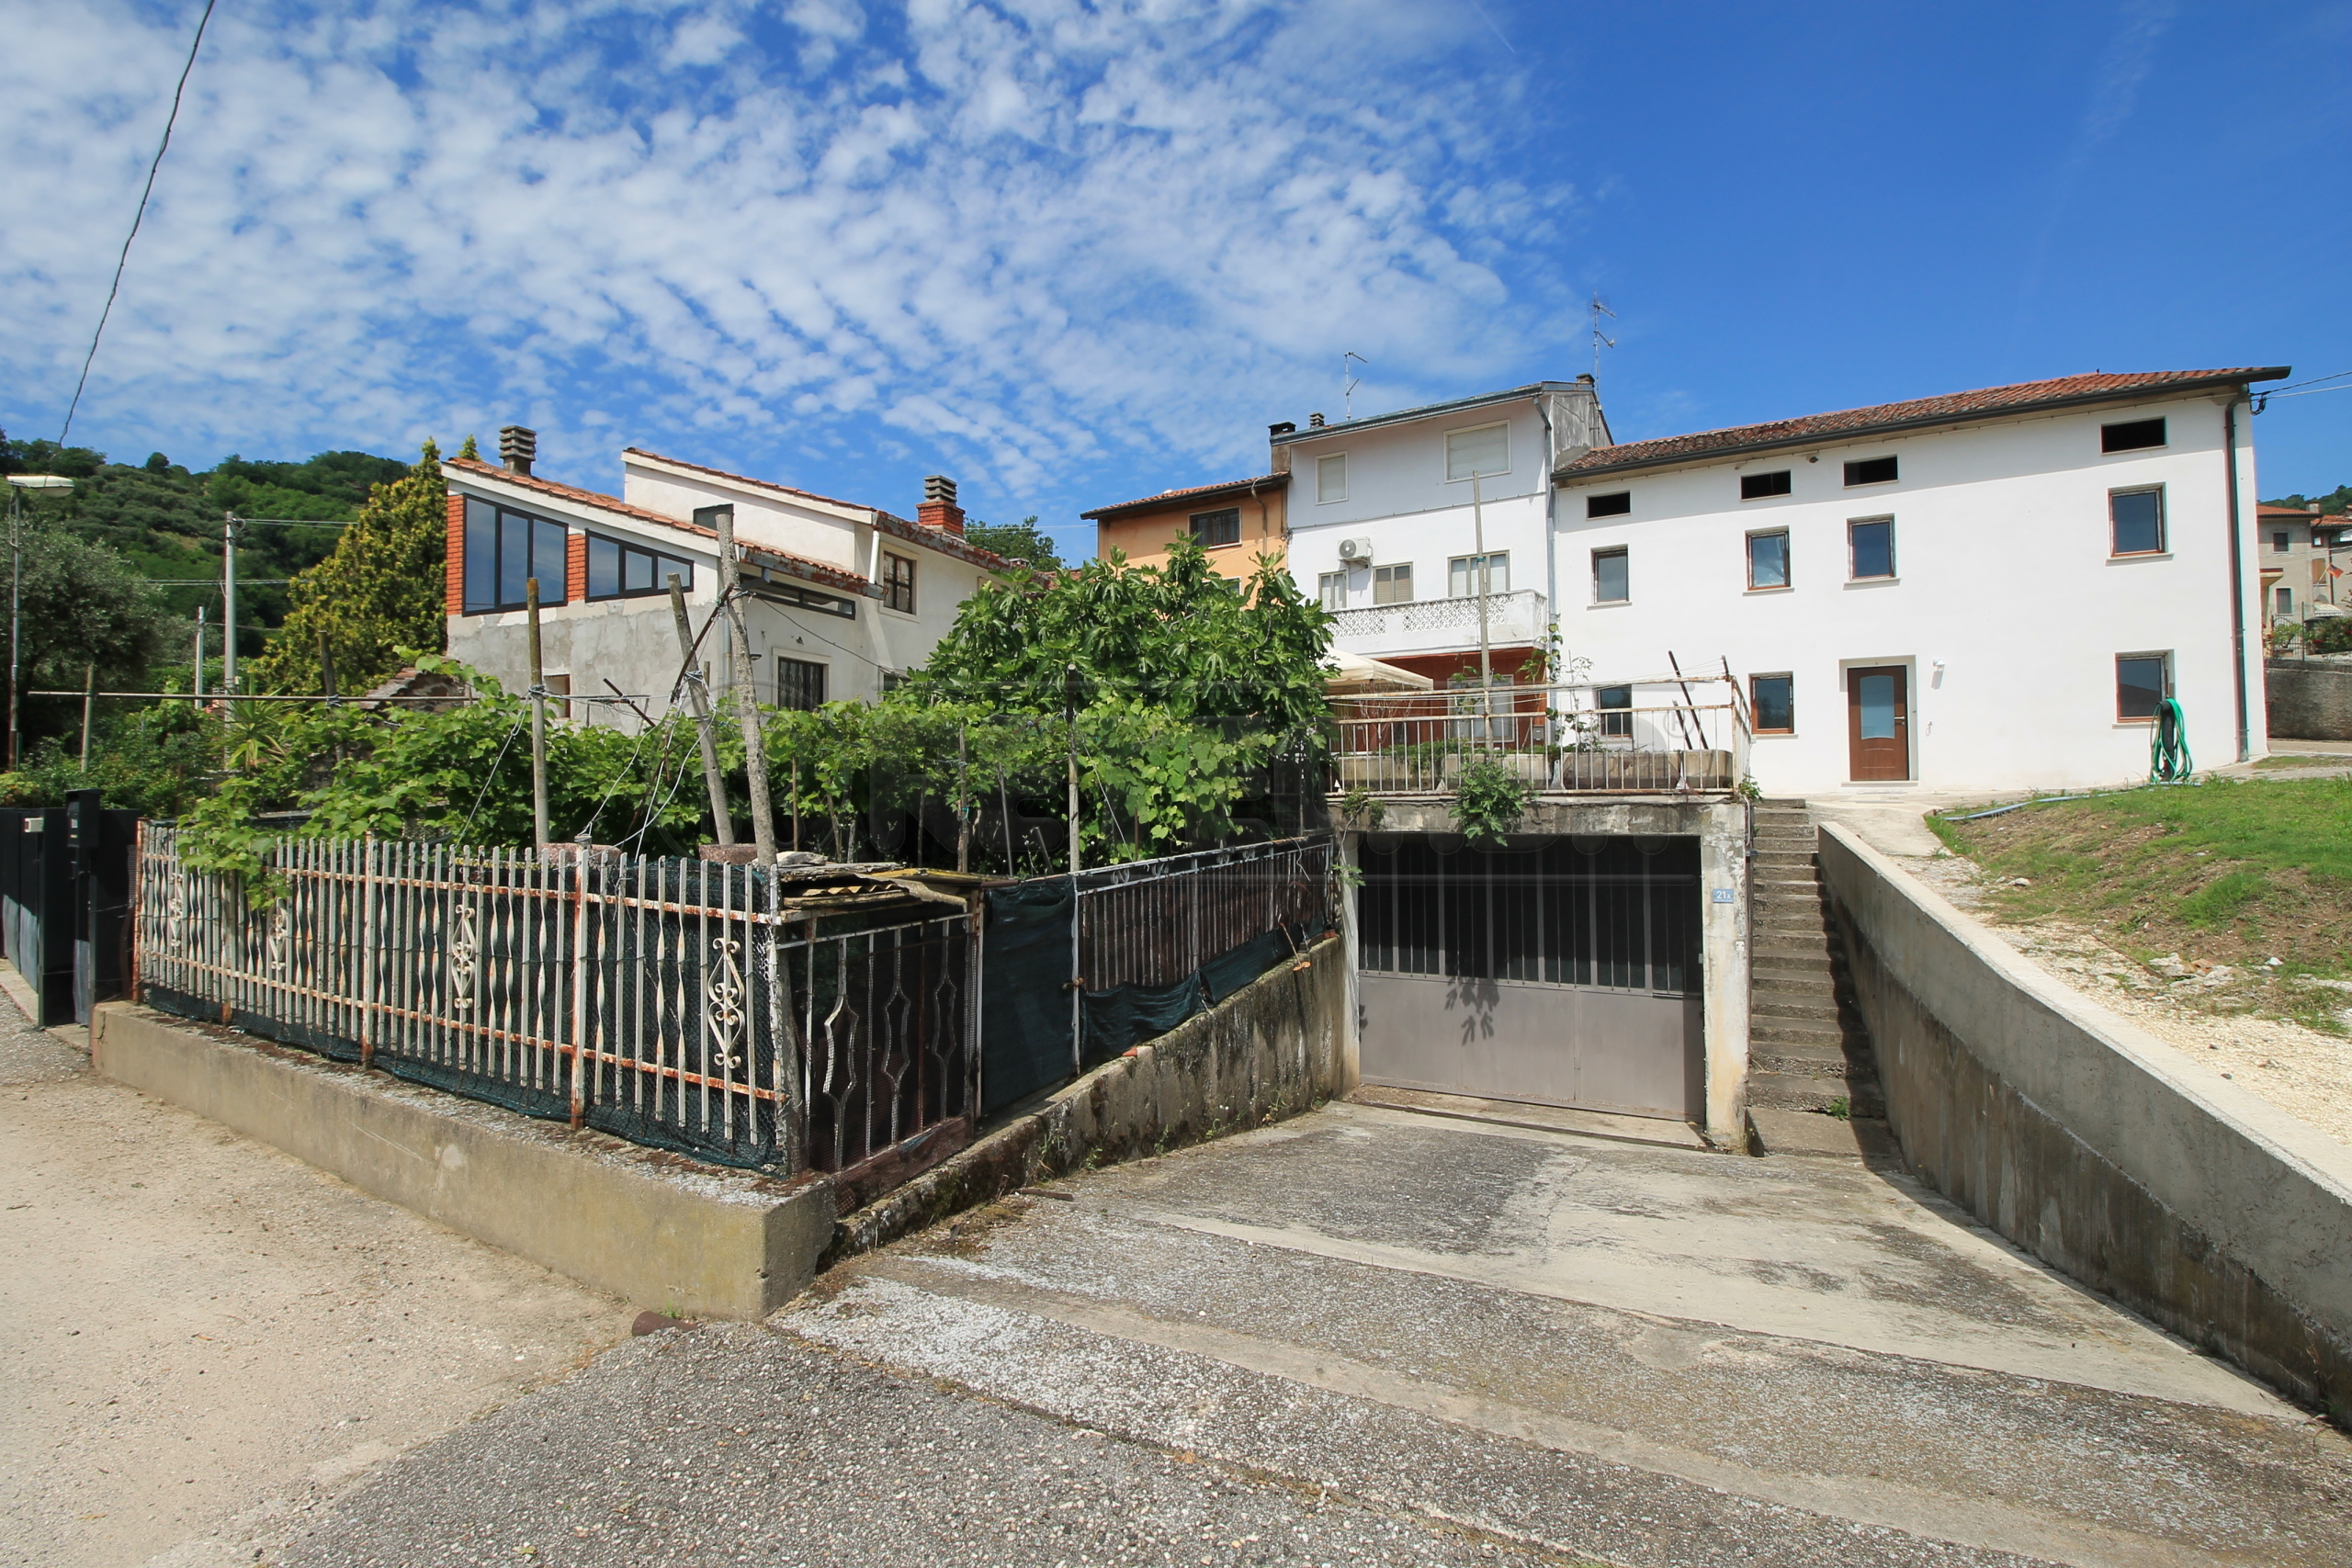 Casa indipendente con terrazzi in contrada selva 25, Montebello Vicentino